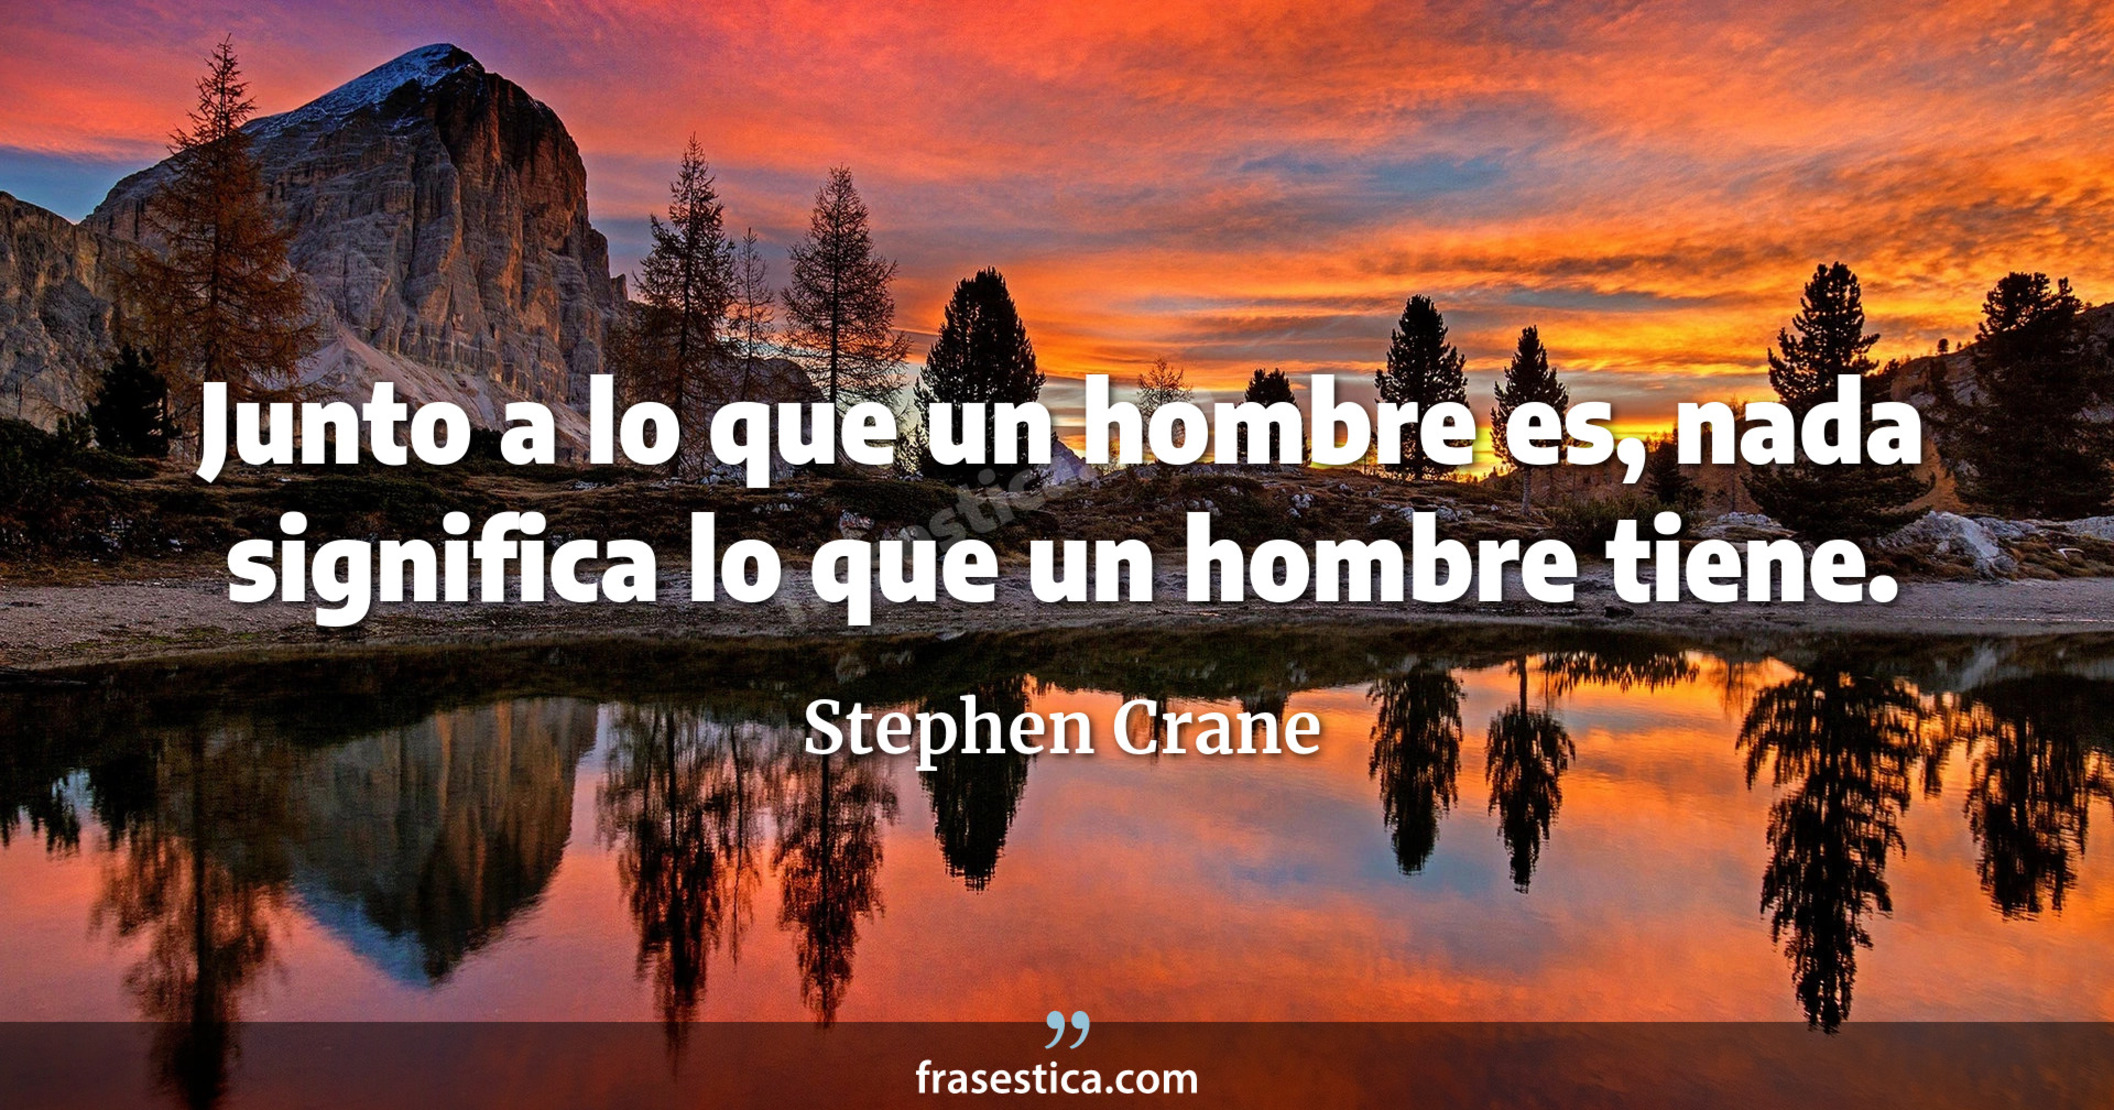 Junto a lo que un hombre es, nada significa lo que un hombre tiene. - Stephen Crane